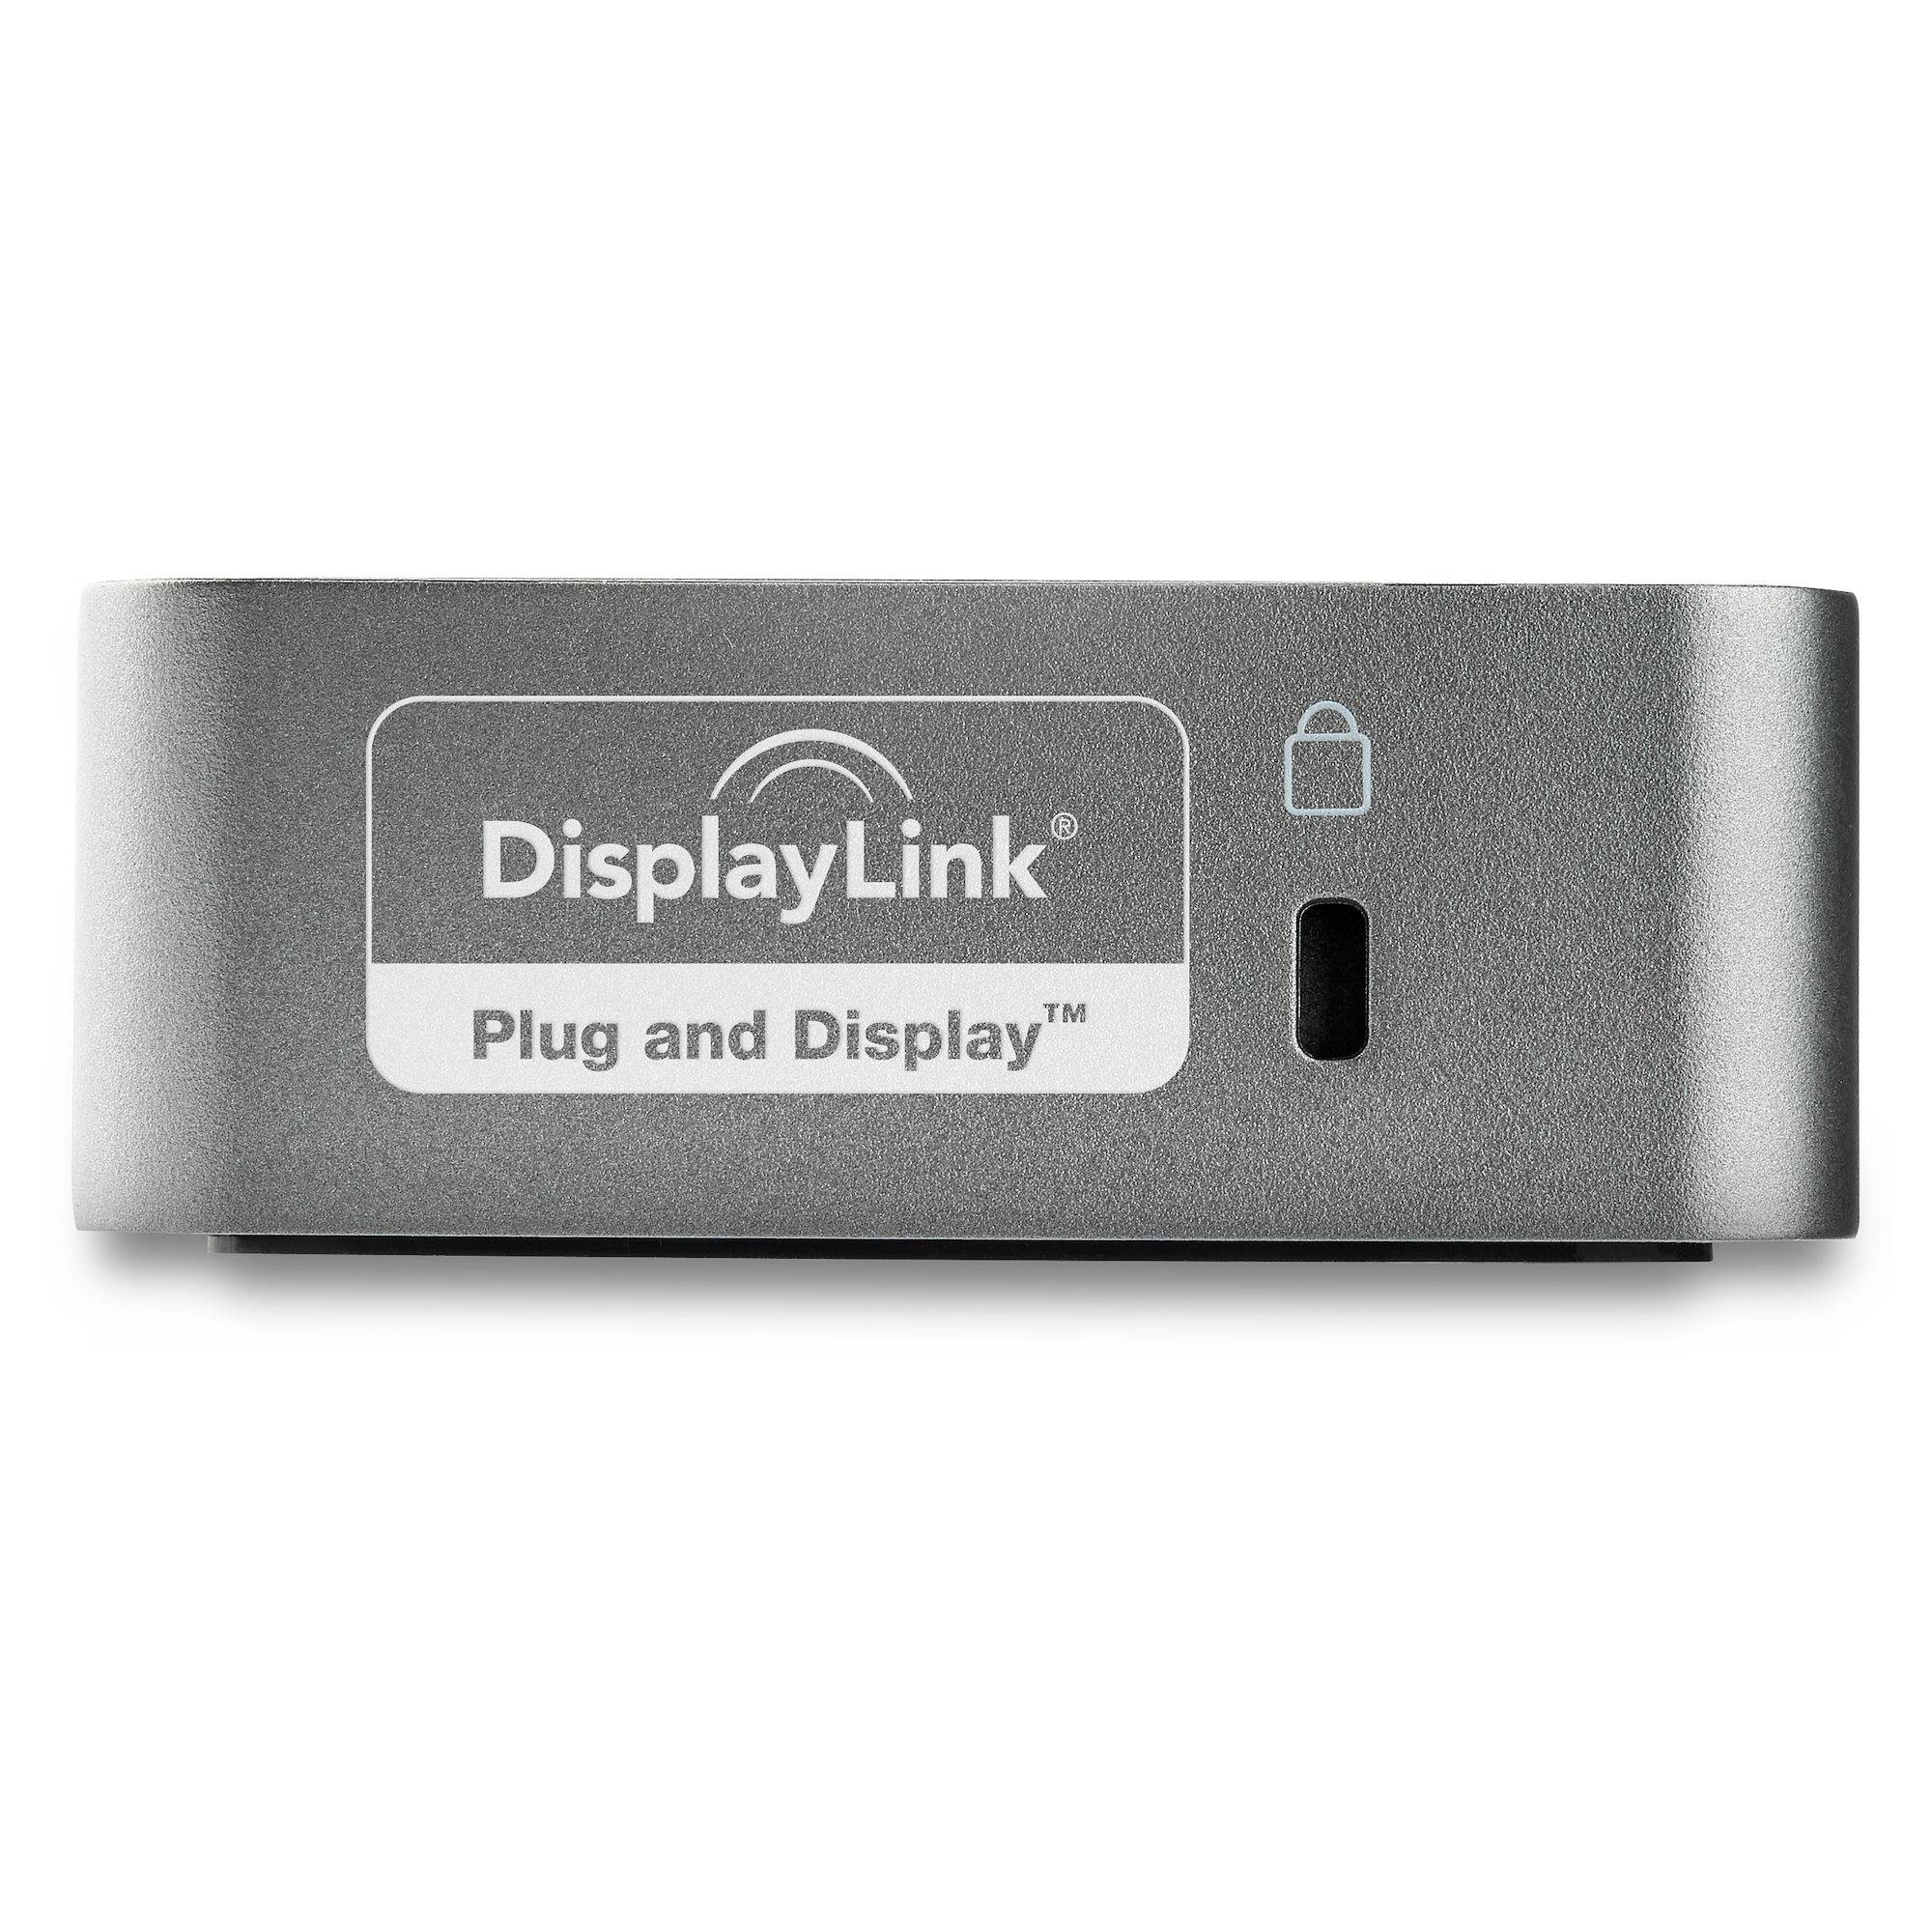 Rca Informatique - image du produit : USB-C DOCK FOR 2 HDMI MONITORS 60W PD GBE